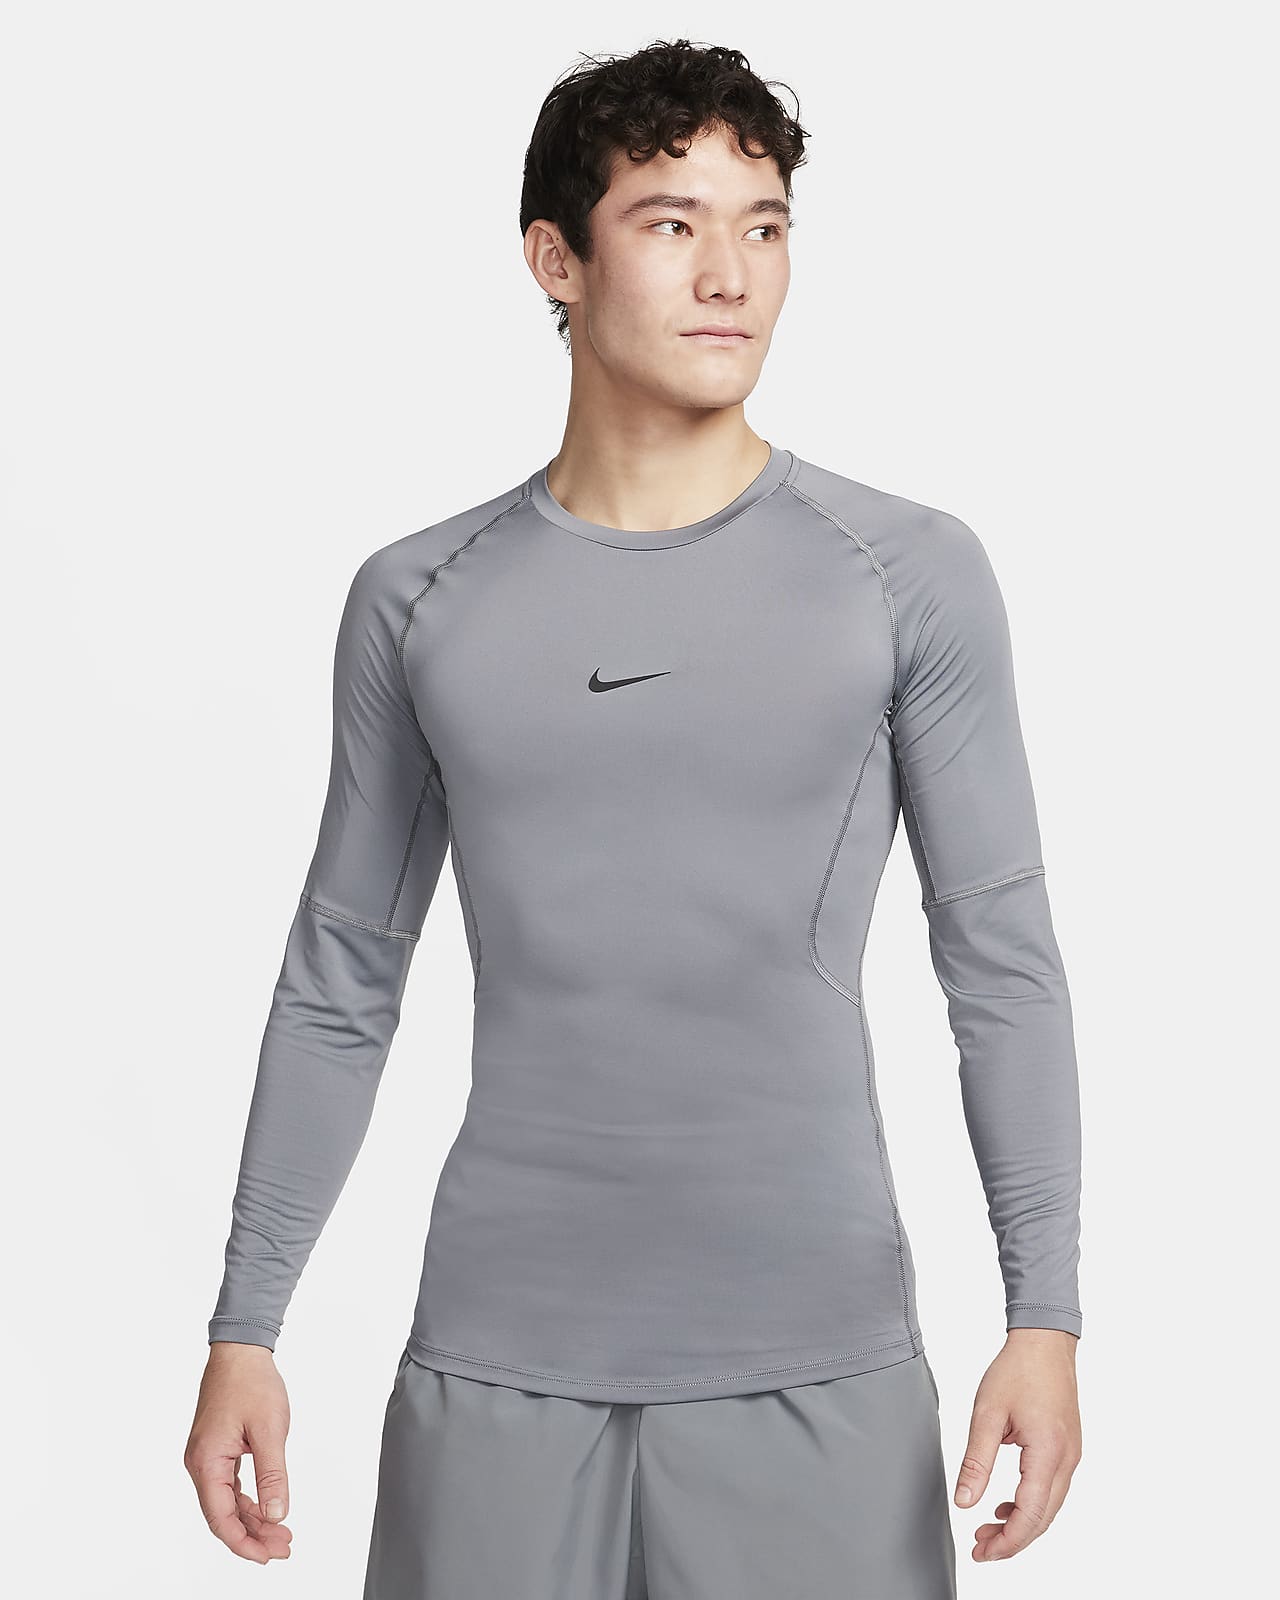 Nike Air Jordan All Season Men's Long Sleeve Top  Long sleeve tops men,  Long sleeve tshirt men, Compression shirt